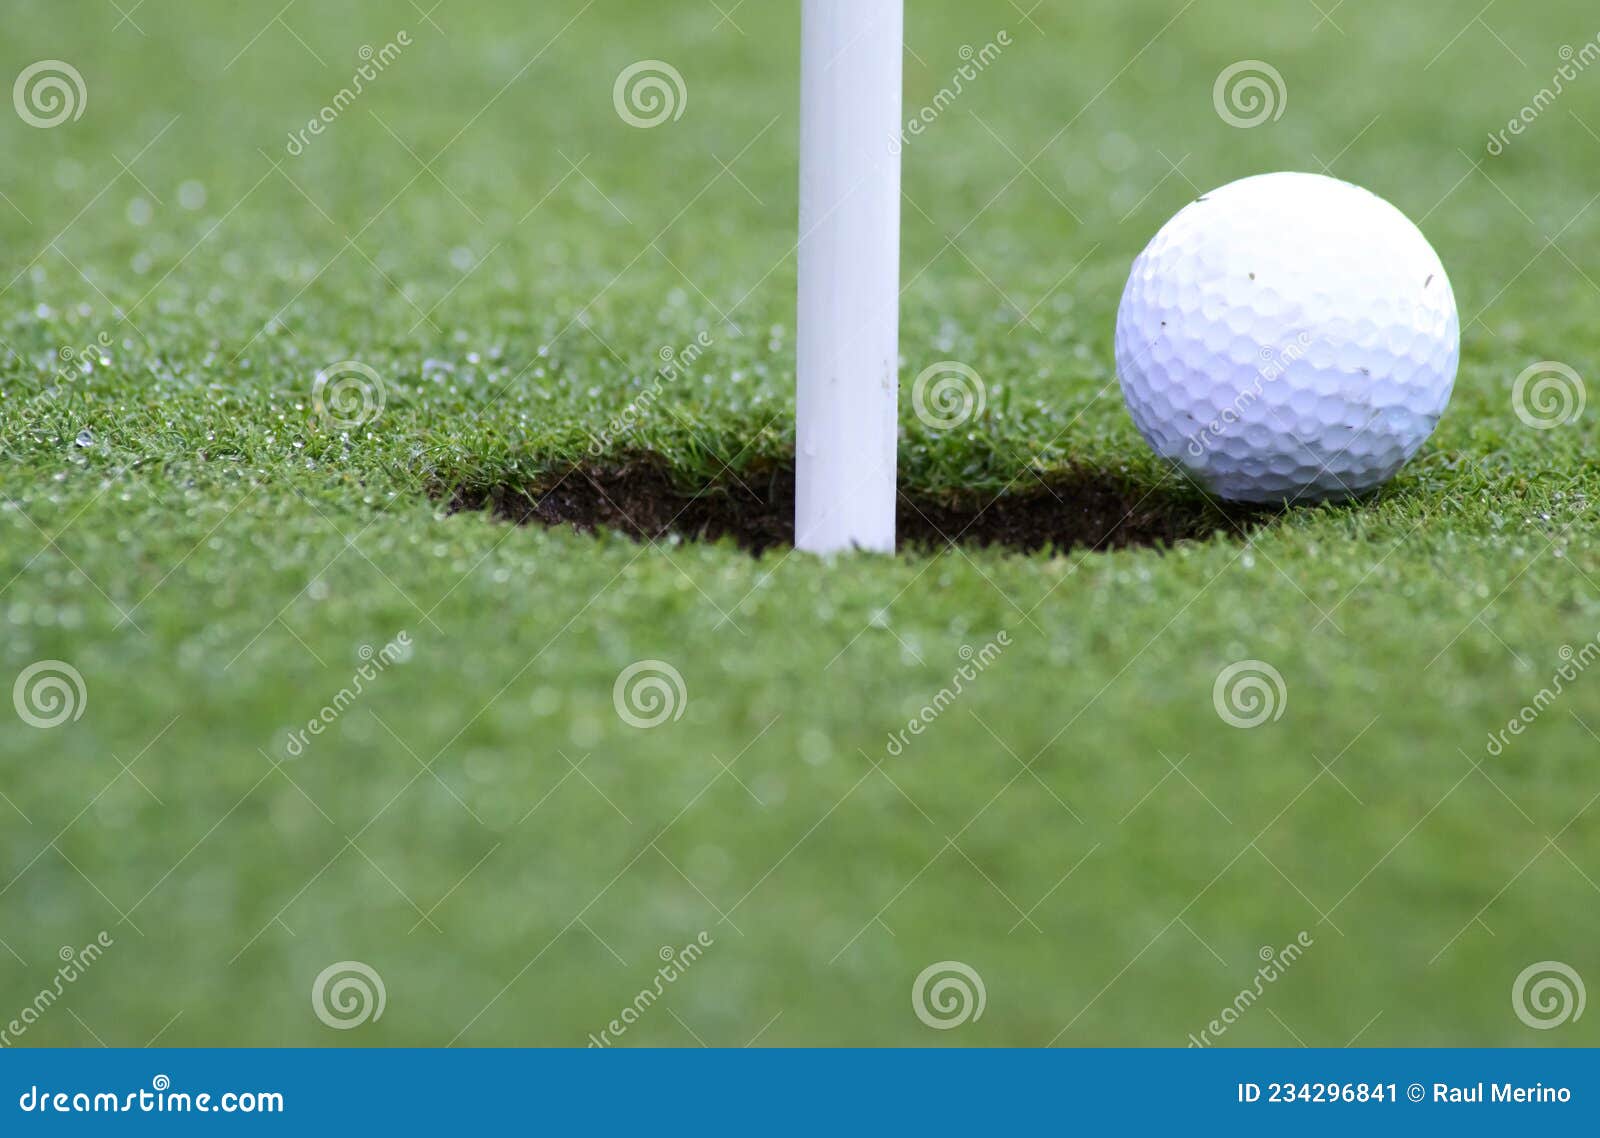 pelota de golf apunto de caer al hoyo